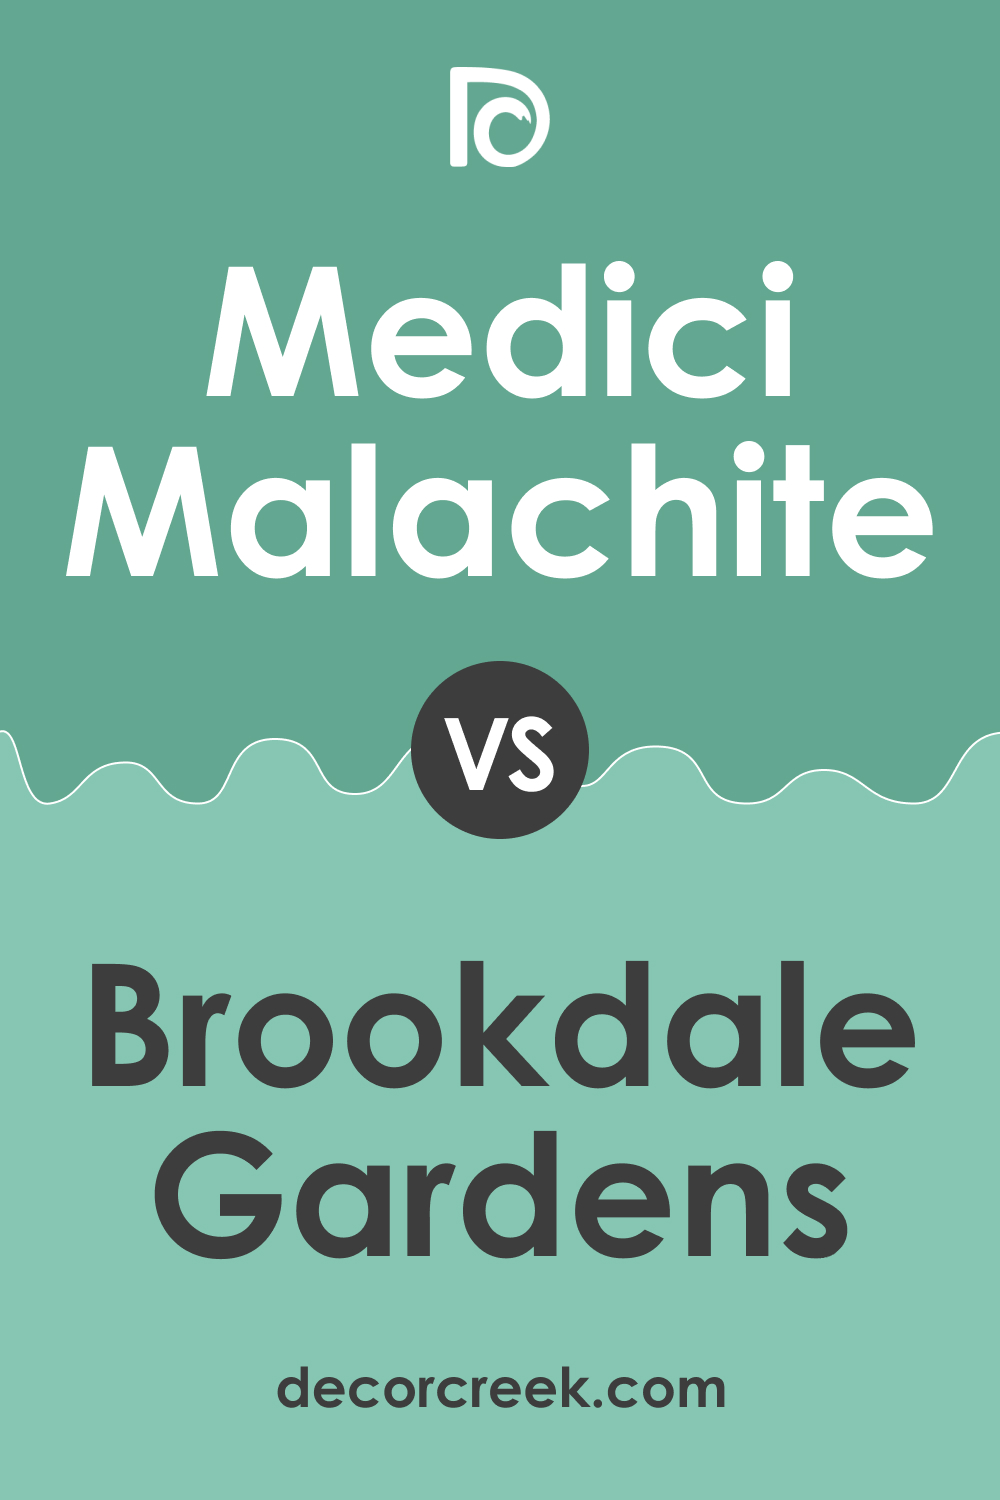 Medici Malachite 600 vs. BM 599 Brookdale Gardens